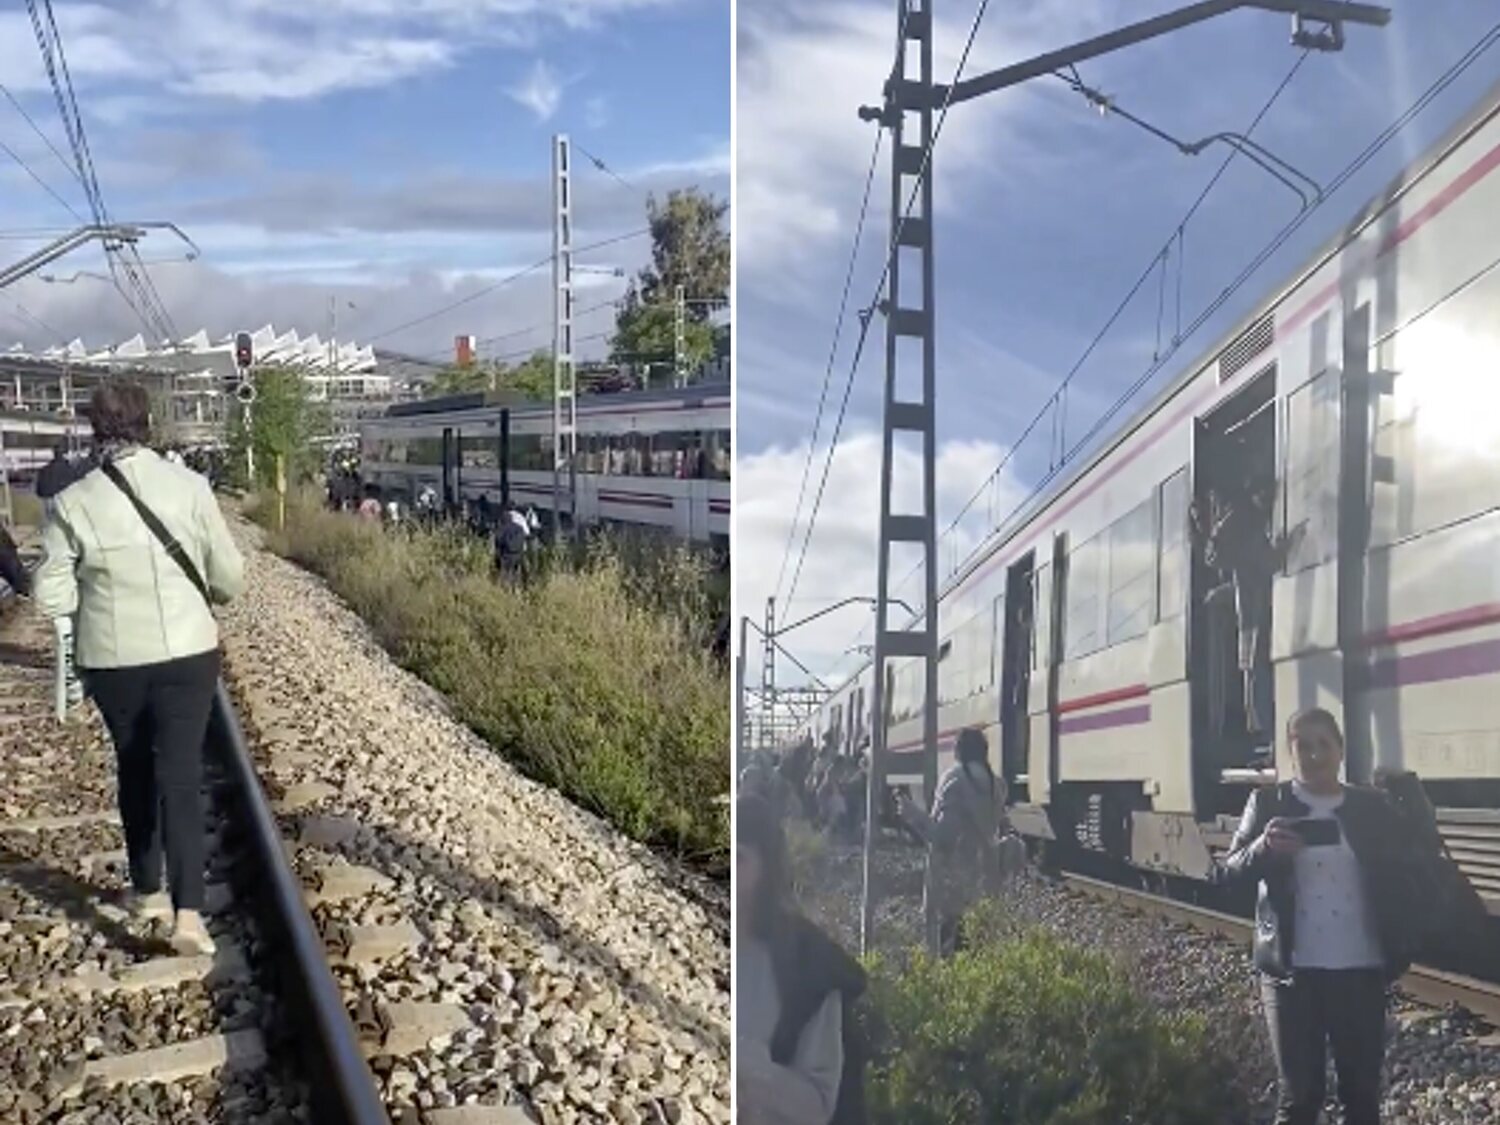 El caos en Cercanías Madrid: retrasos, falta de personal e infraestructuras obsoletas